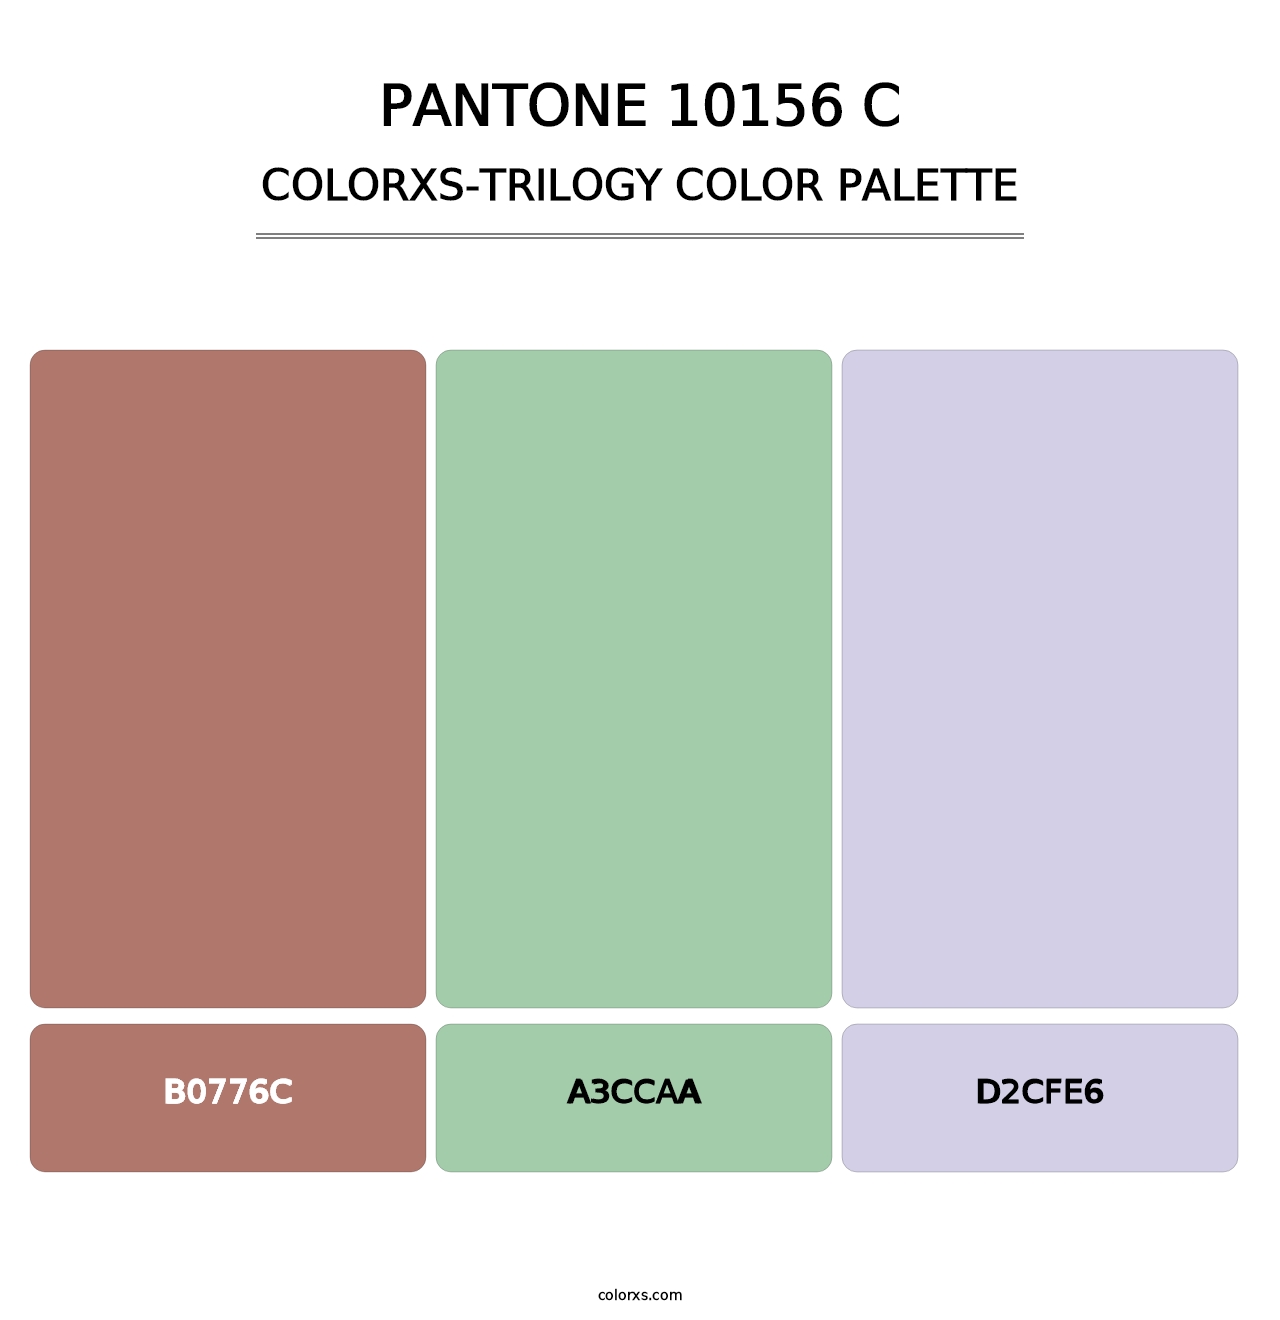 PANTONE 10156 C - Colorxs Trilogy Palette